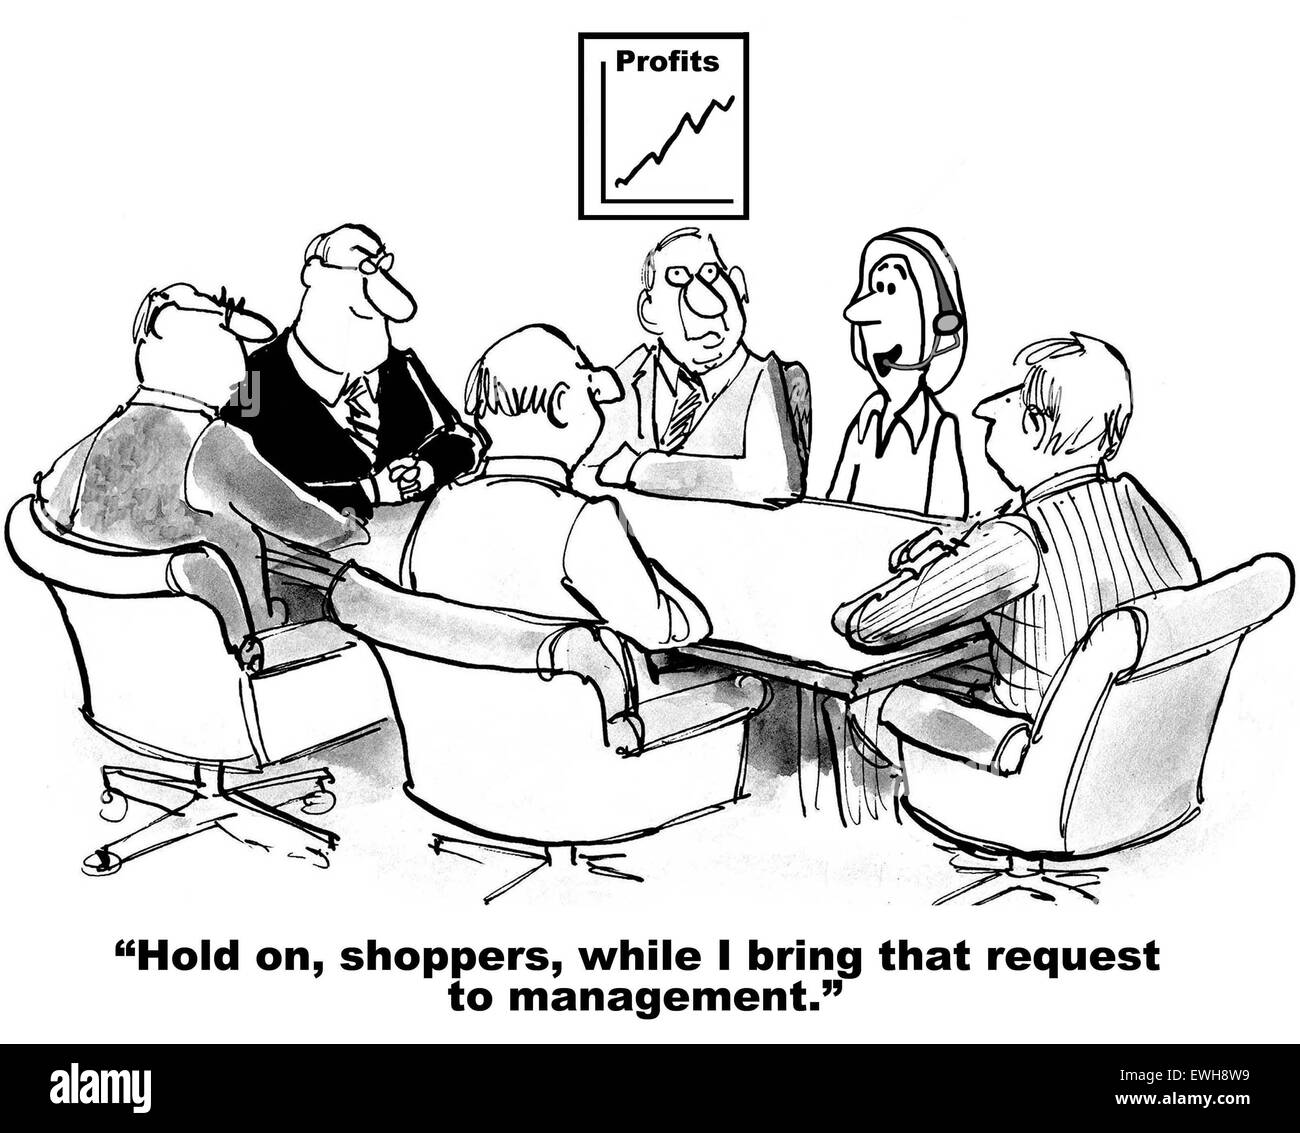 Geschäft Cartoon Frau sagte: "hold on, Shopper, während ich diesen Antrag an das Management zu bringen". Stockfoto